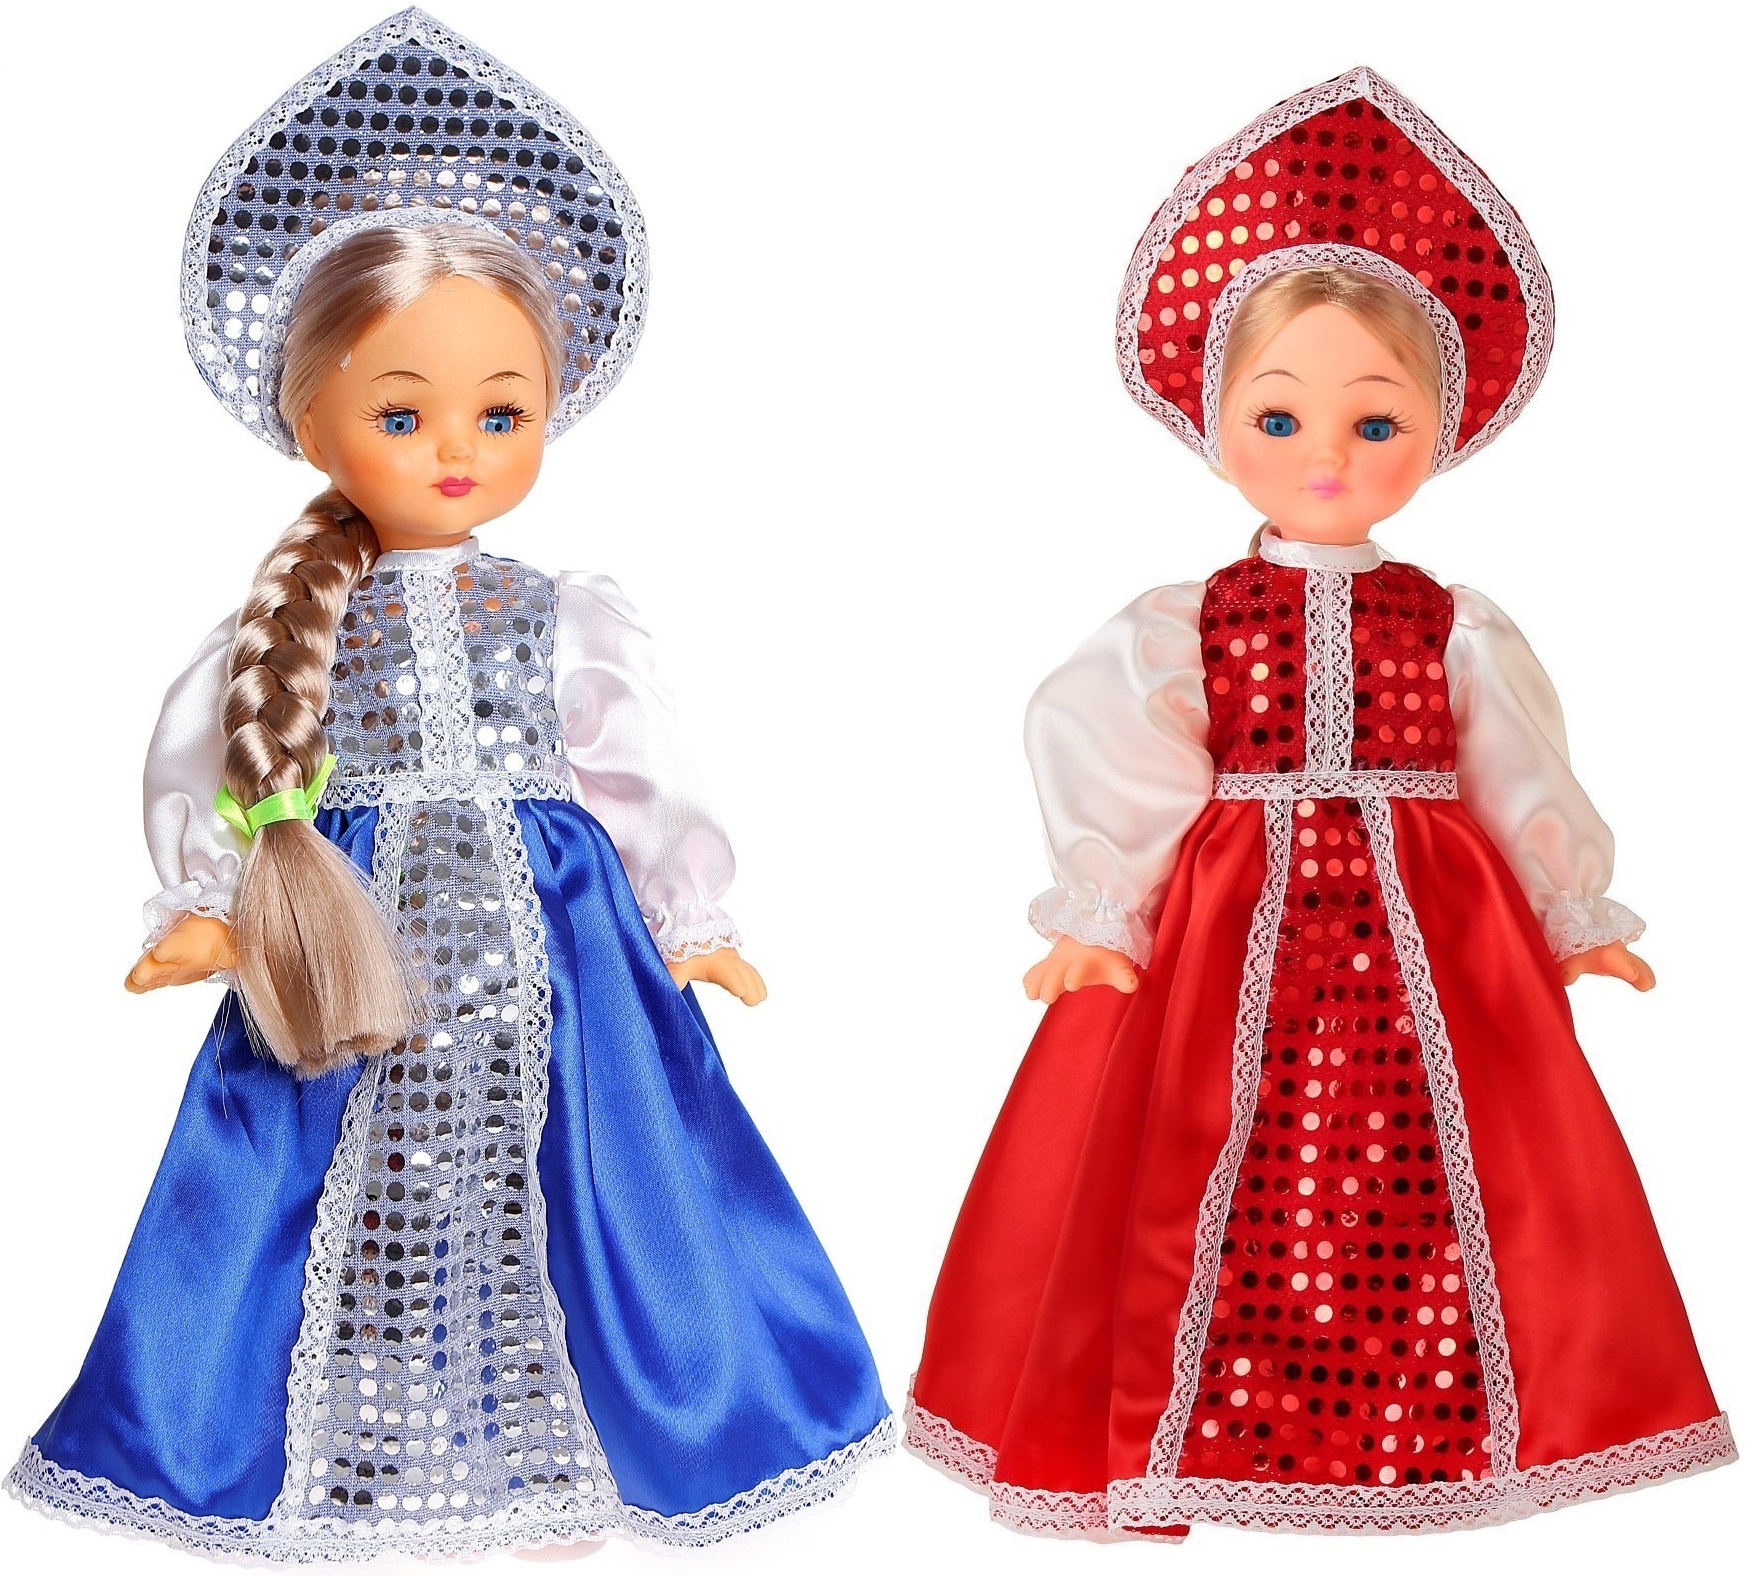 Куклы в народных костюмах - Вероятные прототипы серии